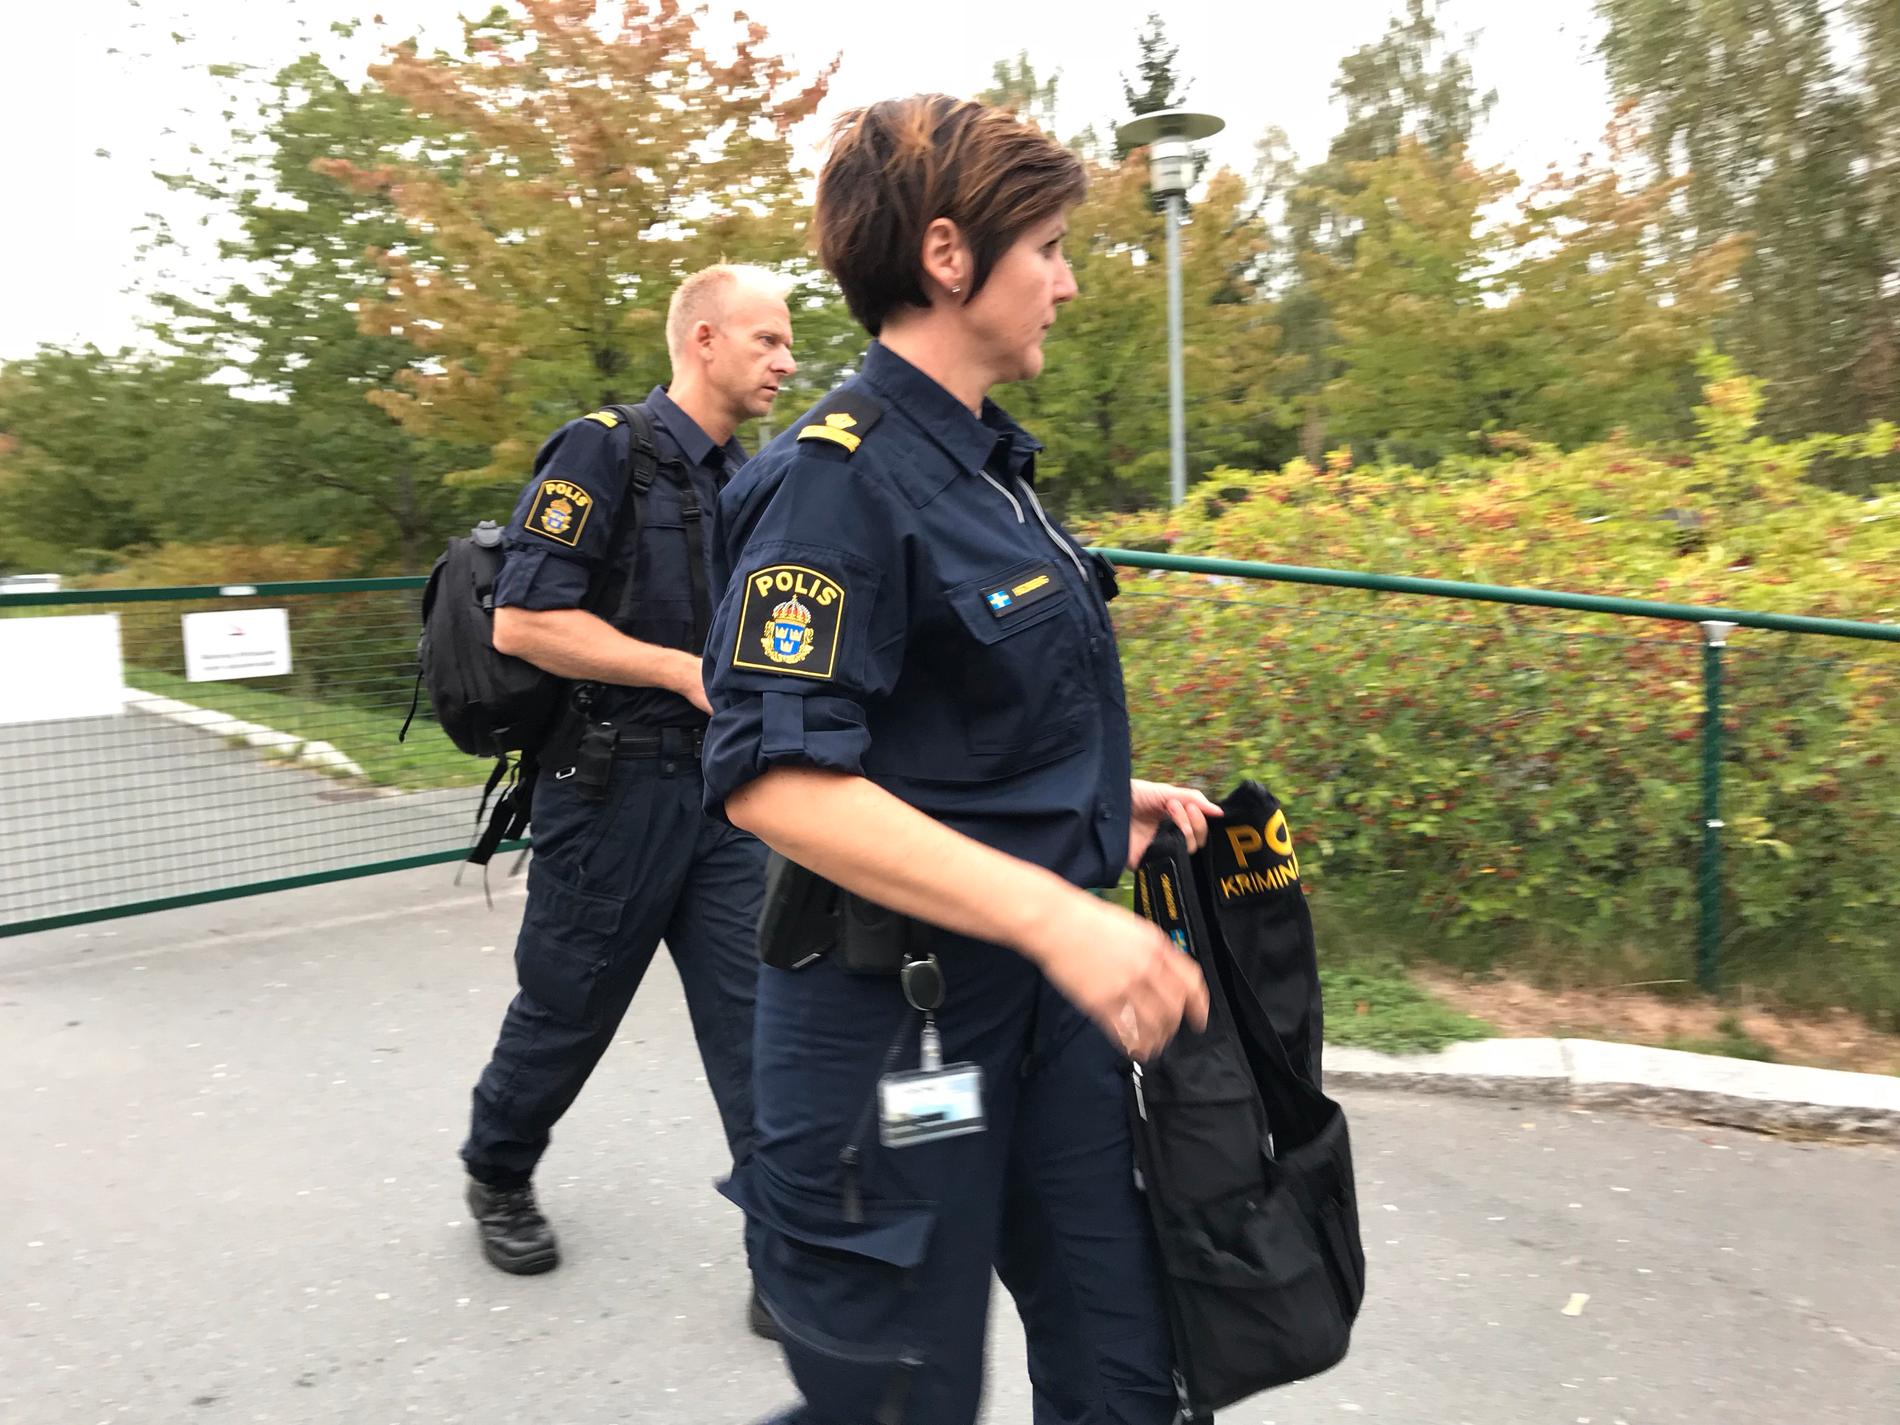 Två elever skadade efter knivskärning vid skola i Jönköping